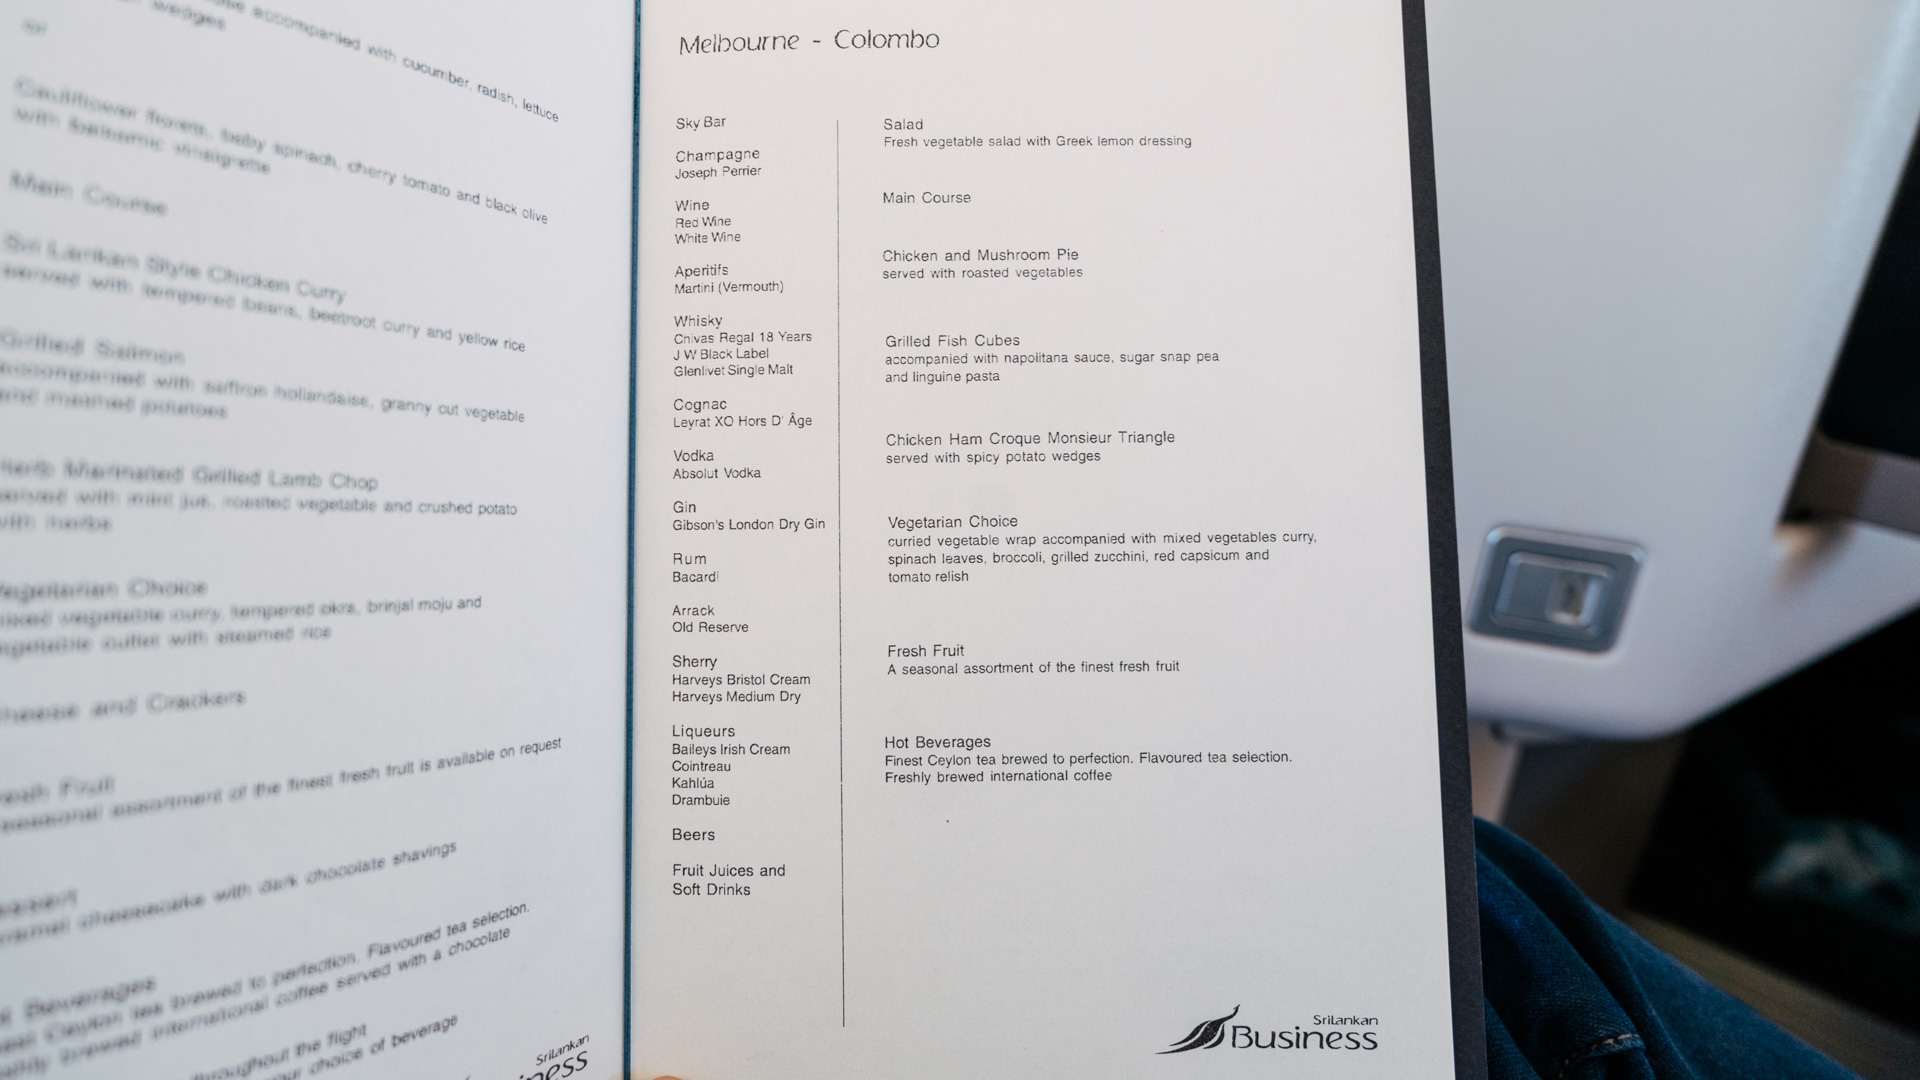 SriLankan Airbus A330 Business Class supper menu